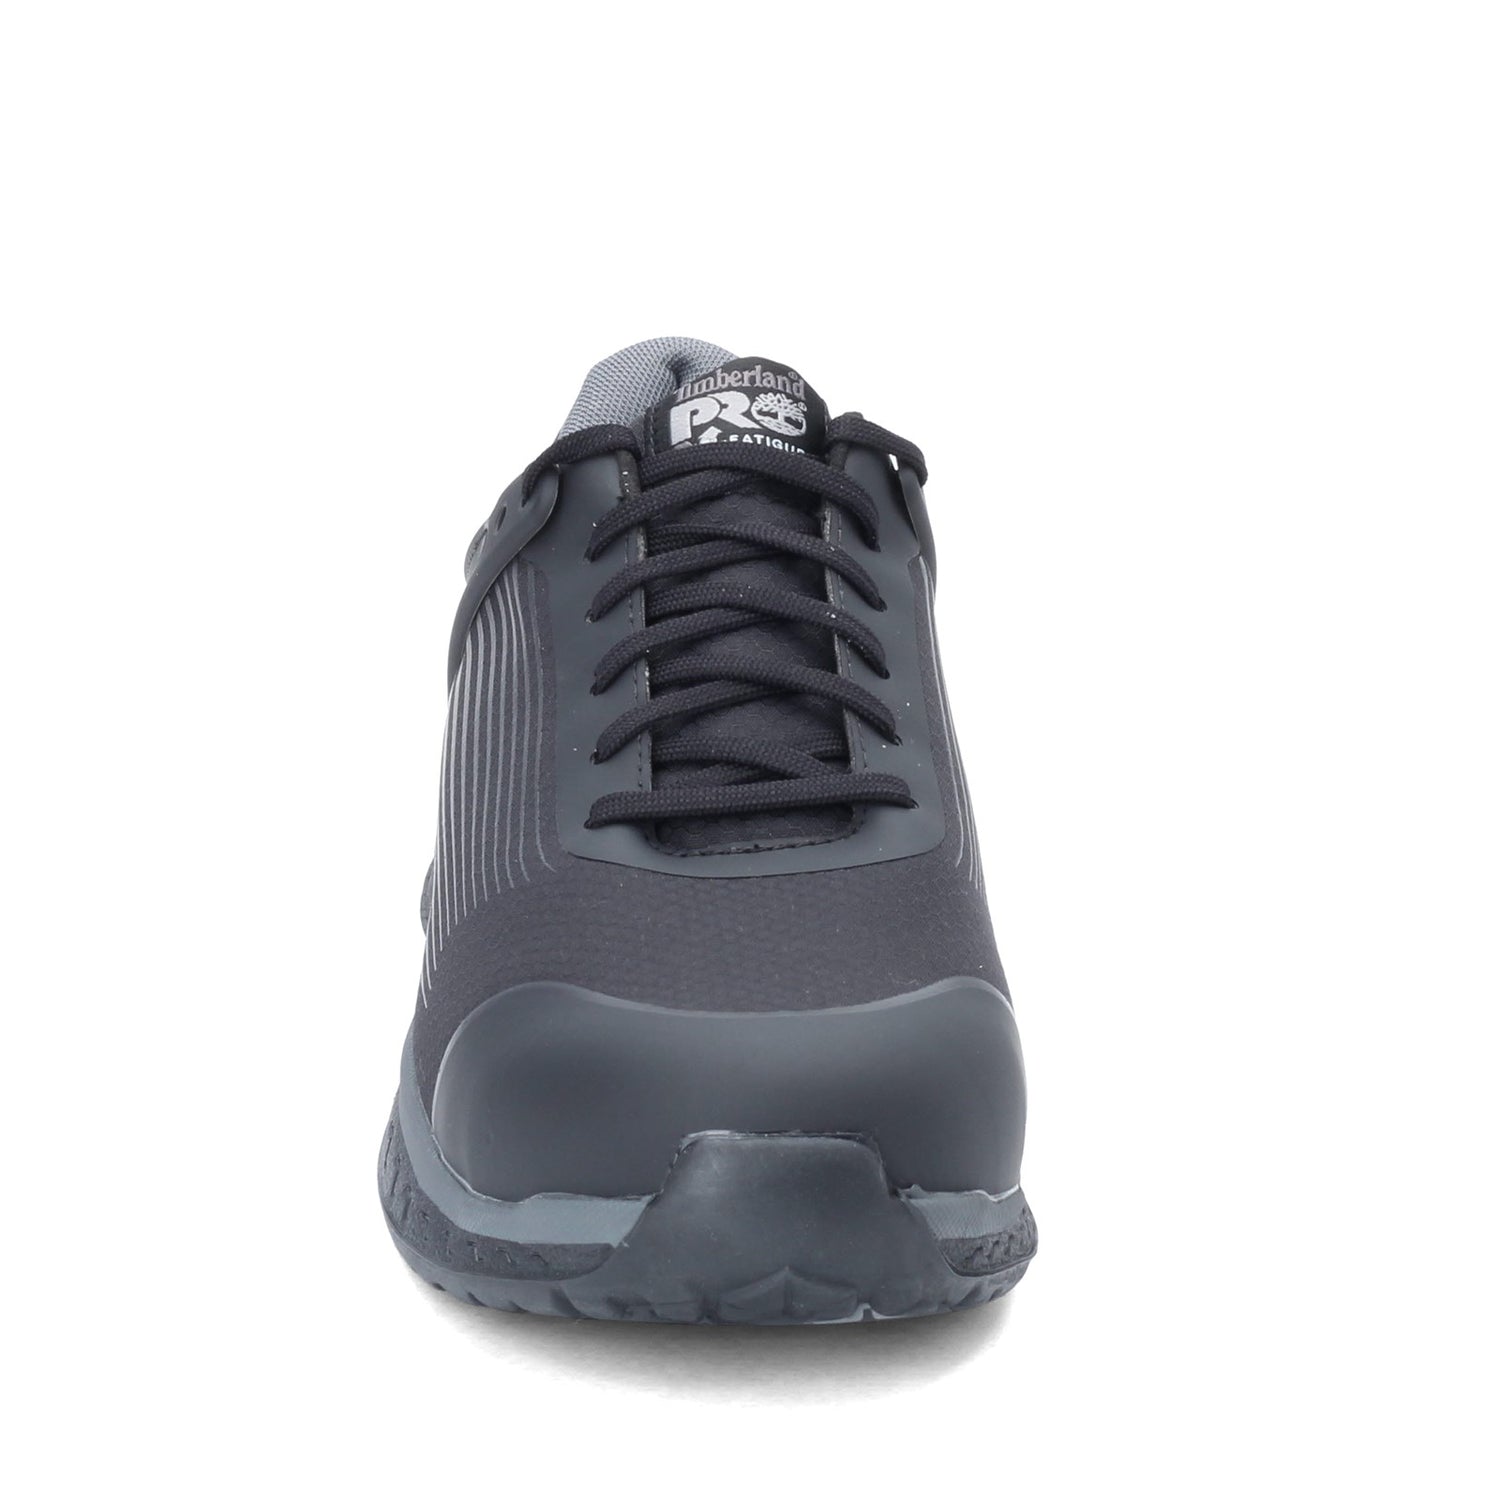 Peltz Shoes  Men's Timberland Pro Drivetrain NT Composite Safety Toe Work Shoe BLACK TB0A1WXC001